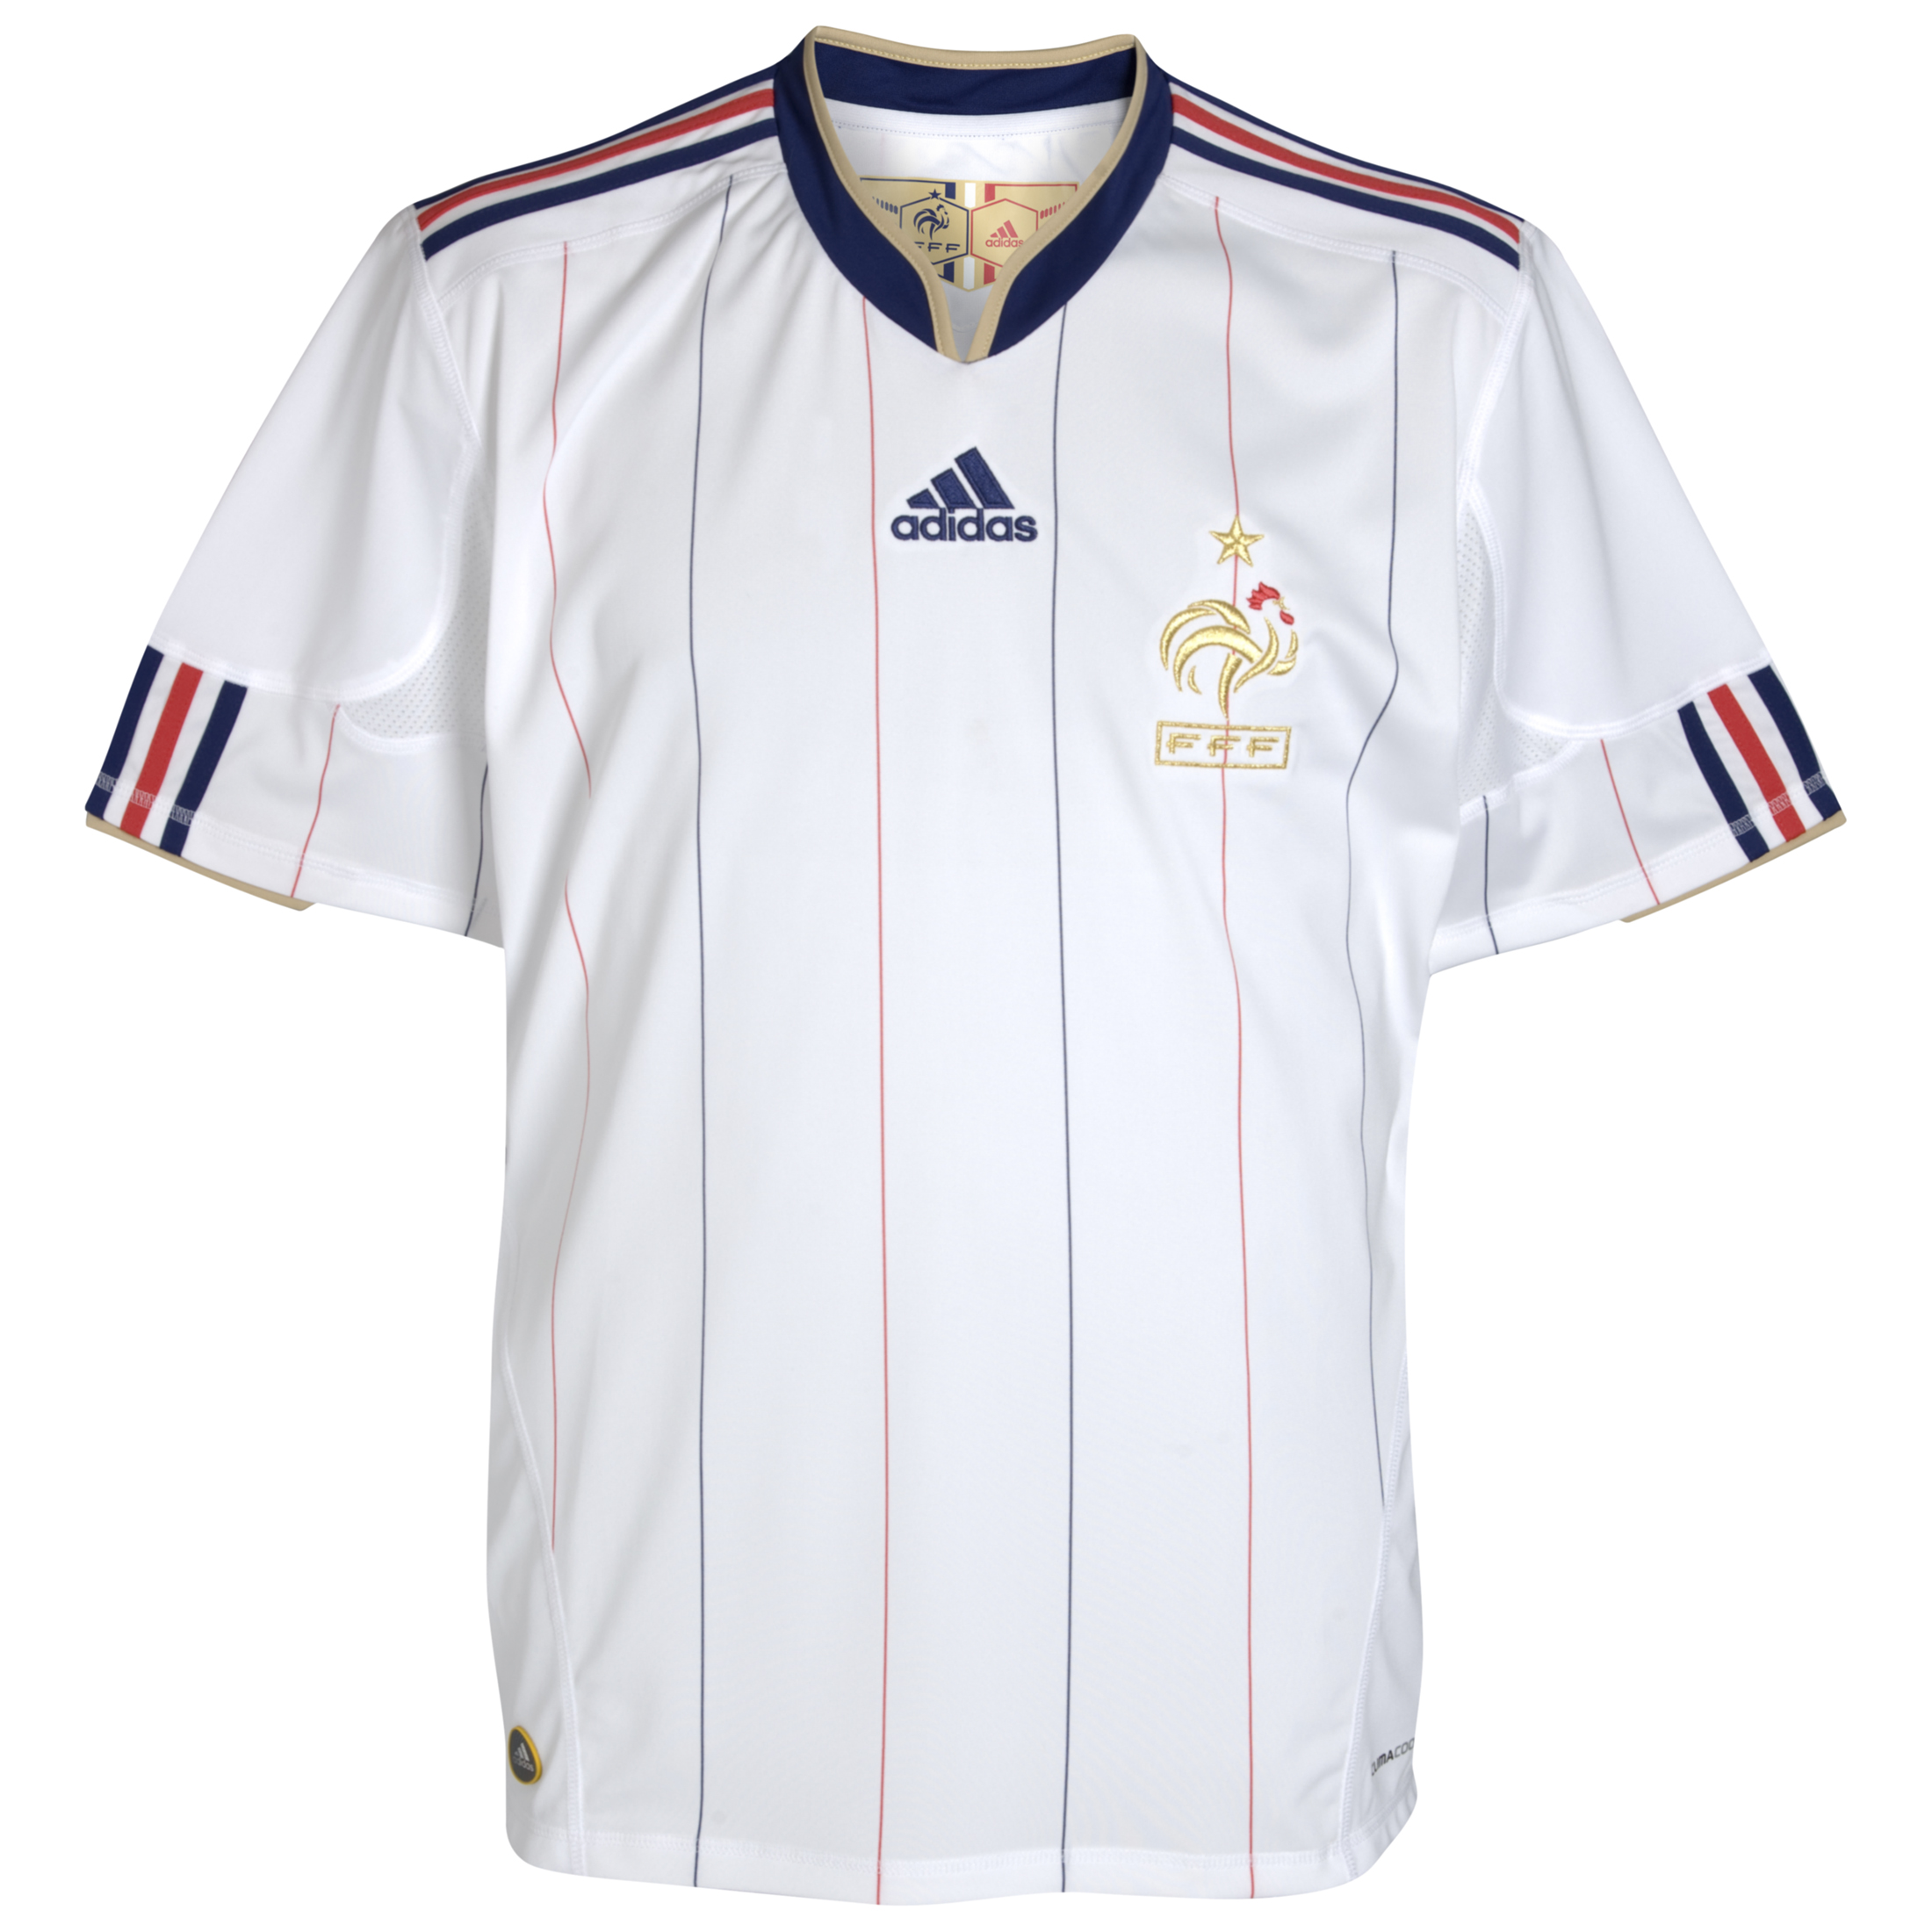 ملابس المنتخبات لكأس العالم 2010 Kb-66928